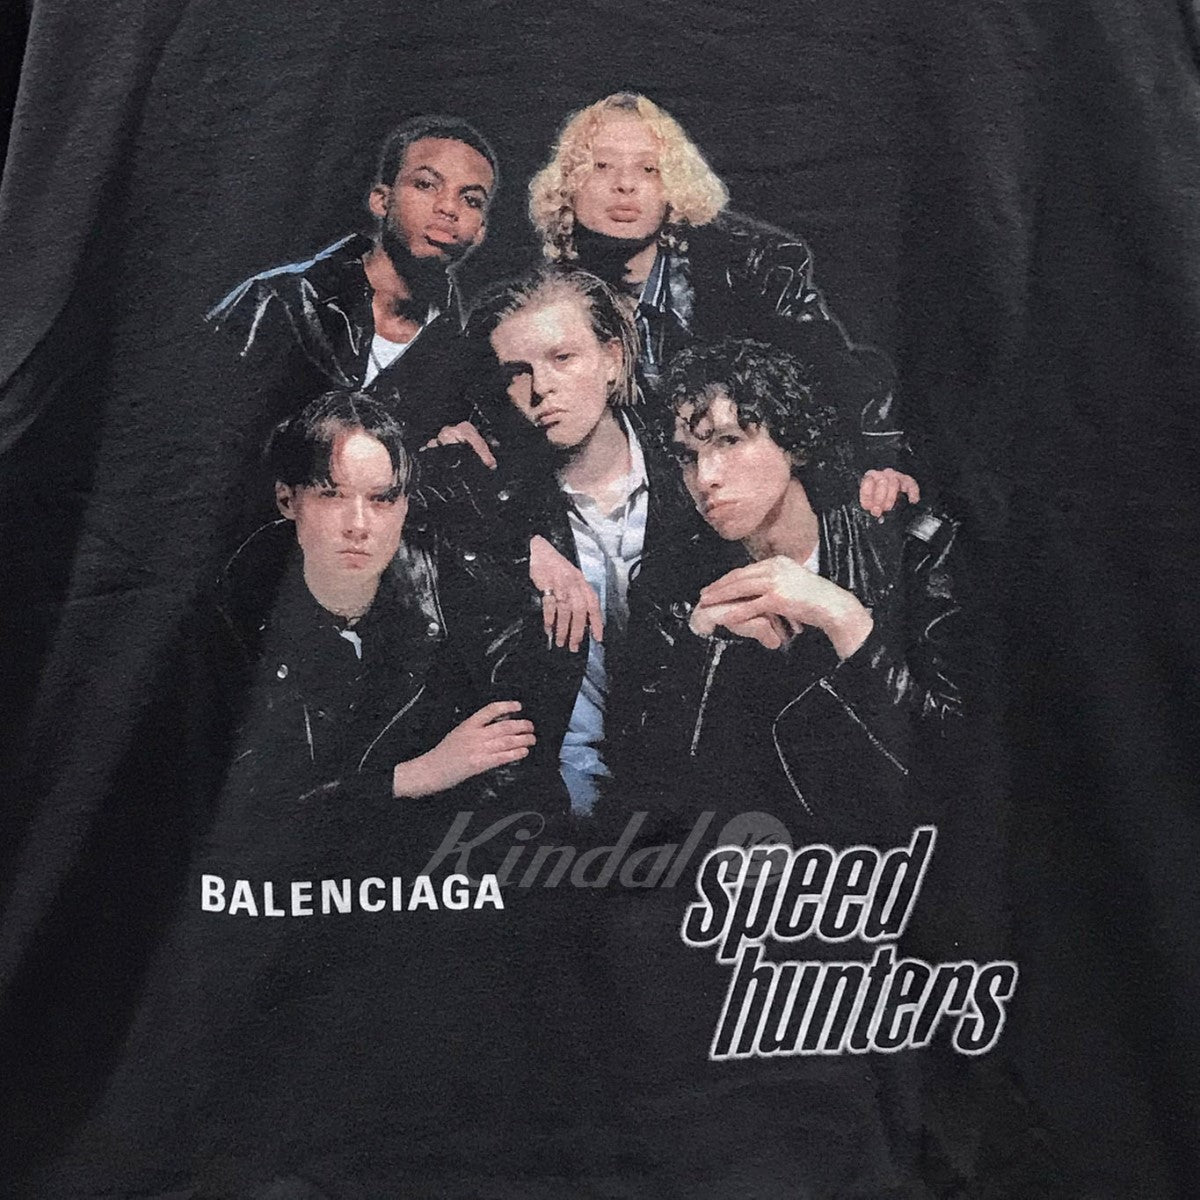 BALENCIAGA Speedhunters スピードハンターズ Tシャツ - Tシャツ ...